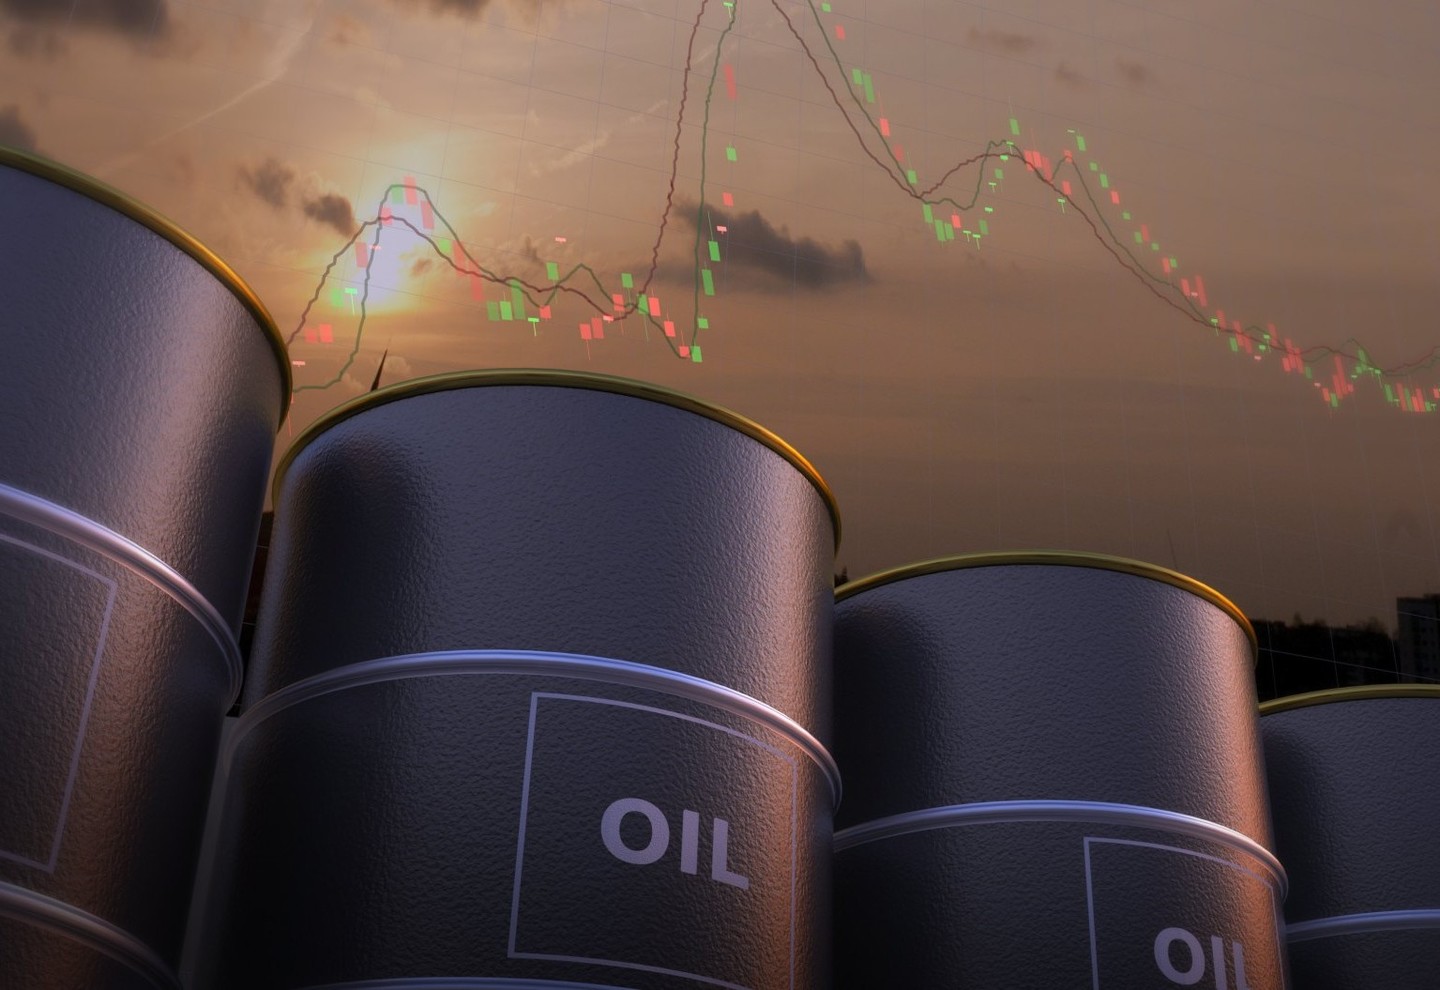 短评：油价不具备持续大涨的基础-博易大师